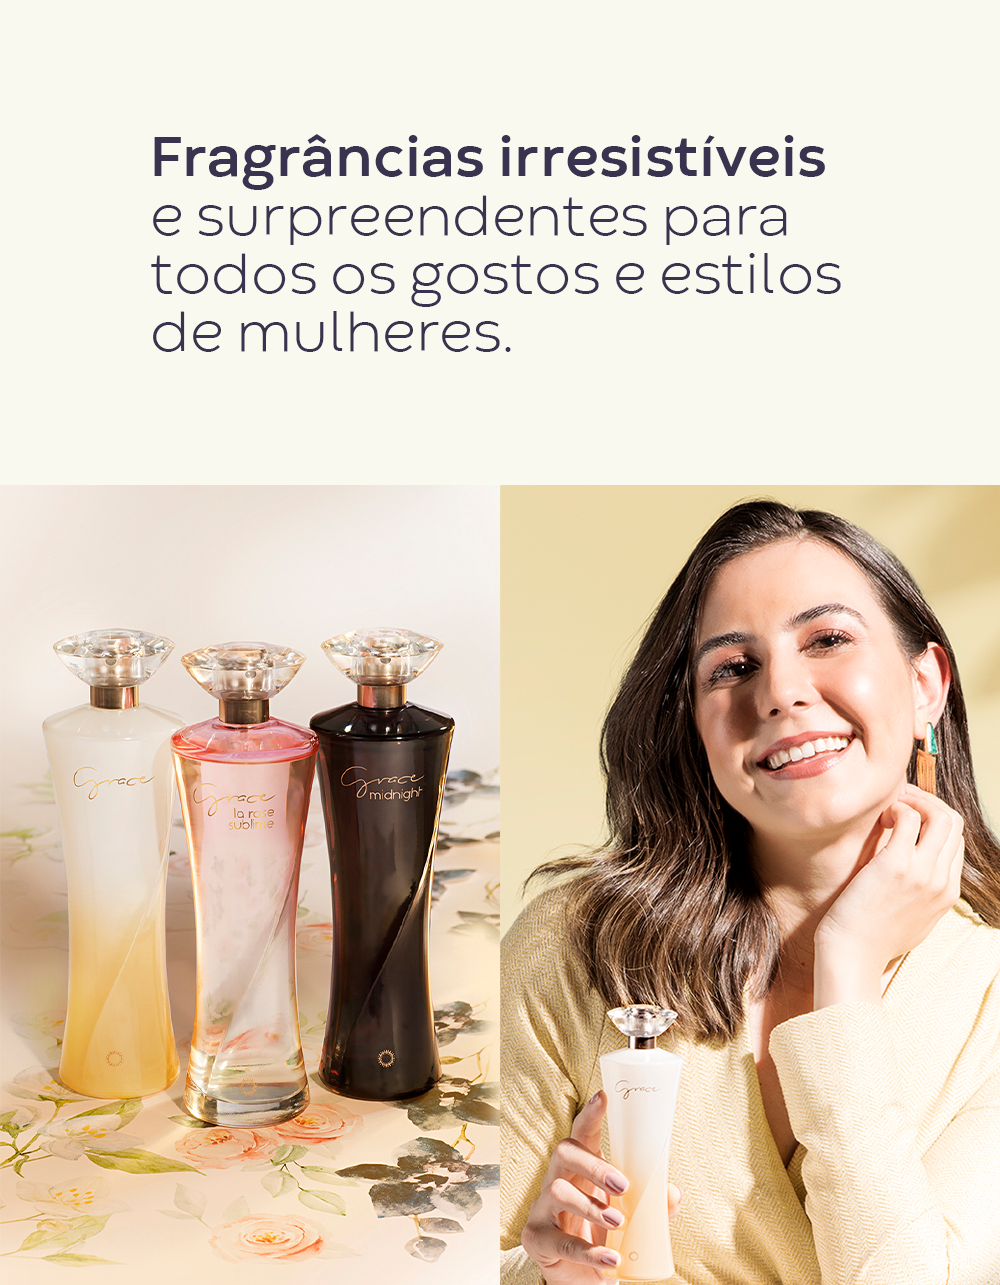 Hinode - São Benedito - Compare os preços dos perfumes originais